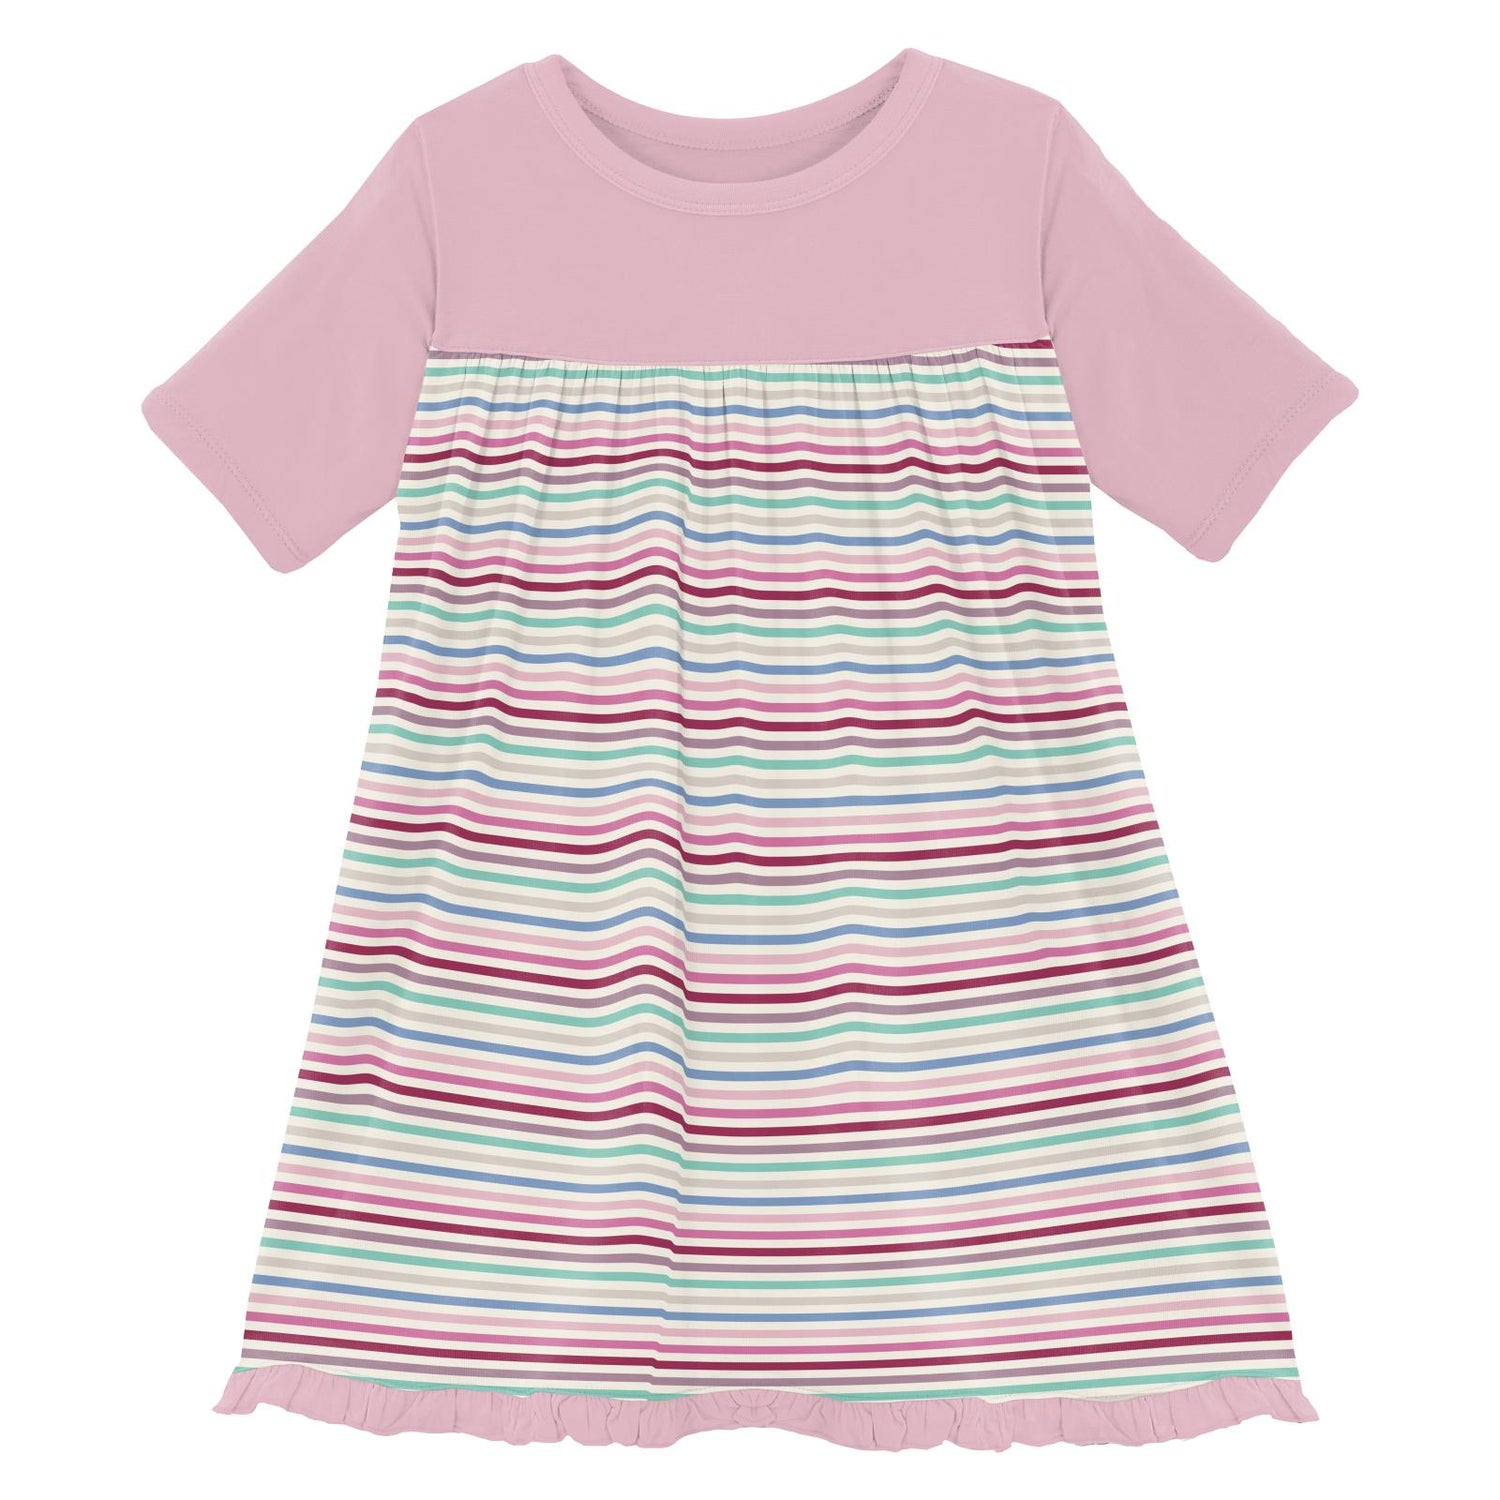 Print Classic Short Sleeve Swing Dress in Make Believe Stripe